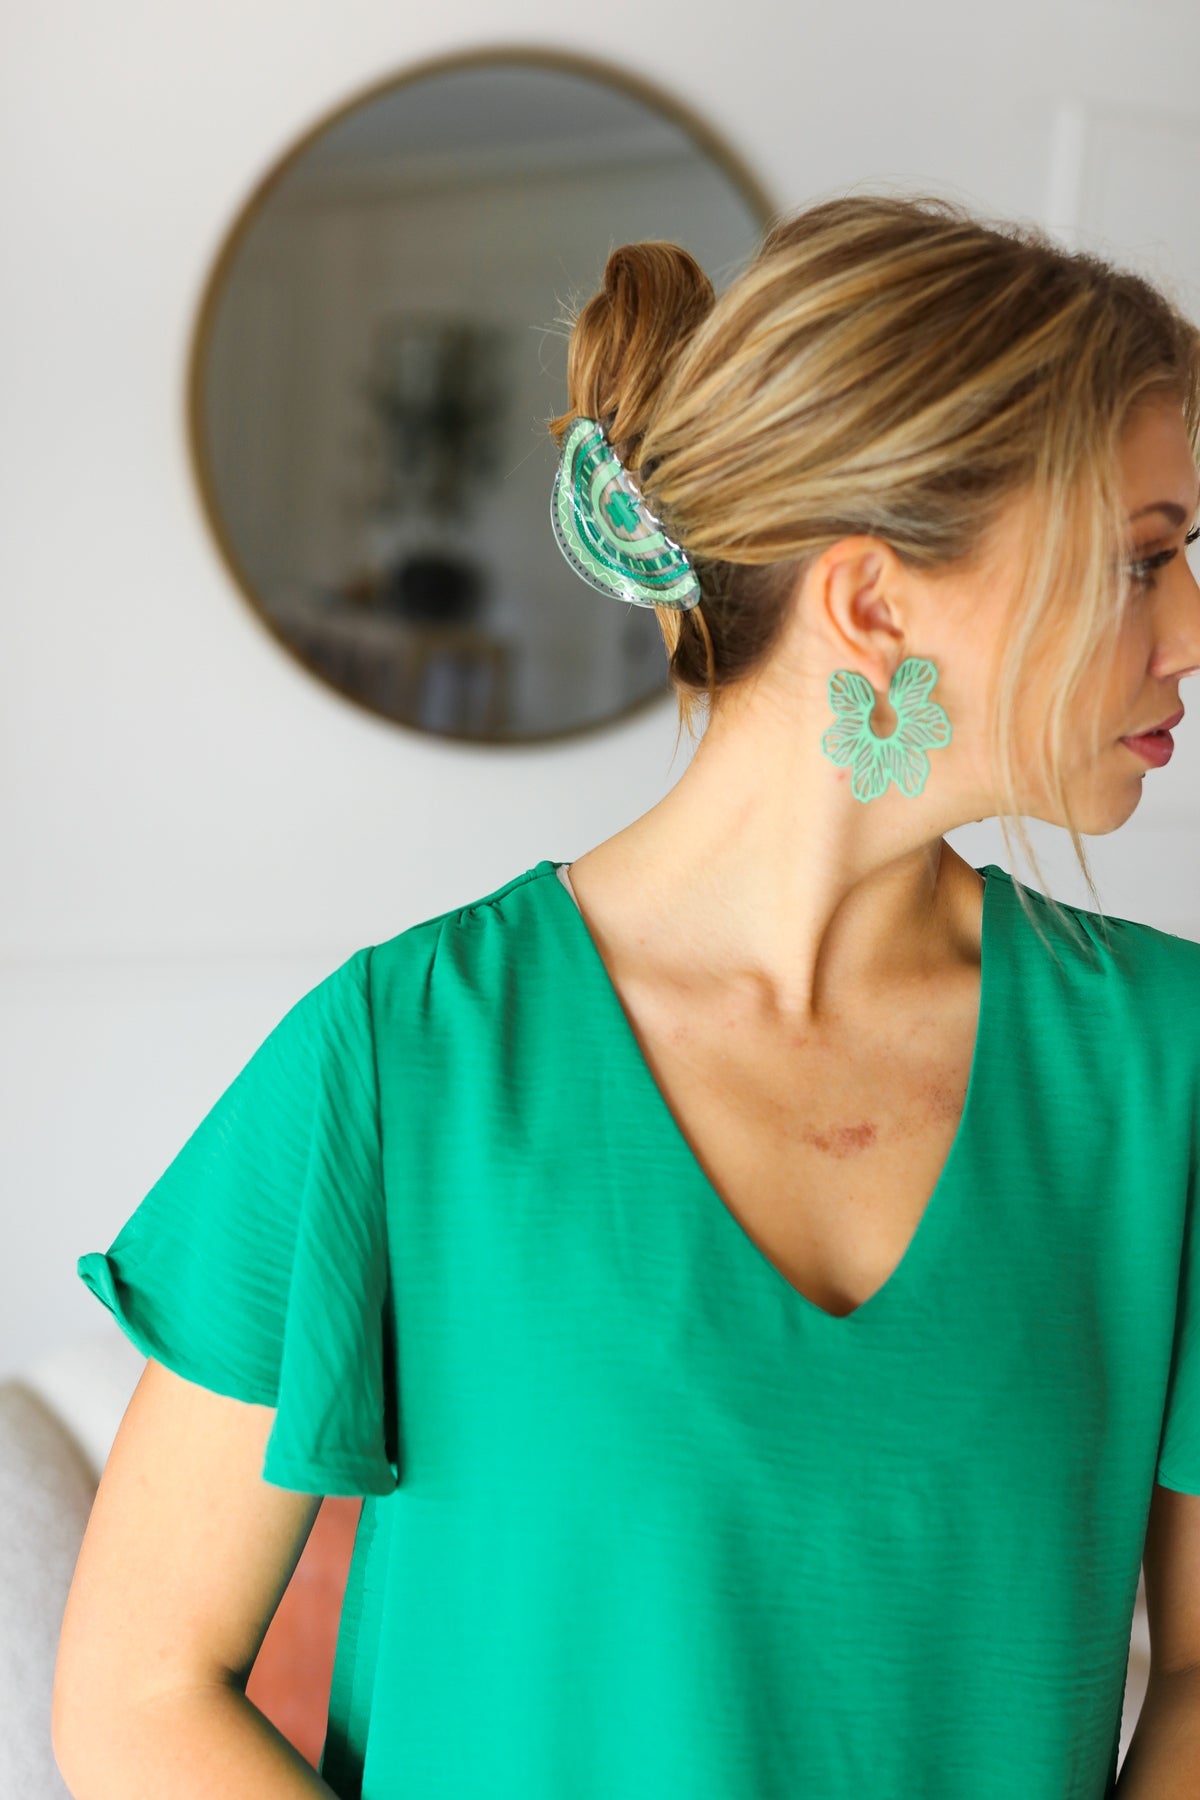 Green Vintage Metal Flower Power Earrings - Sybaritic Bags & Clothing